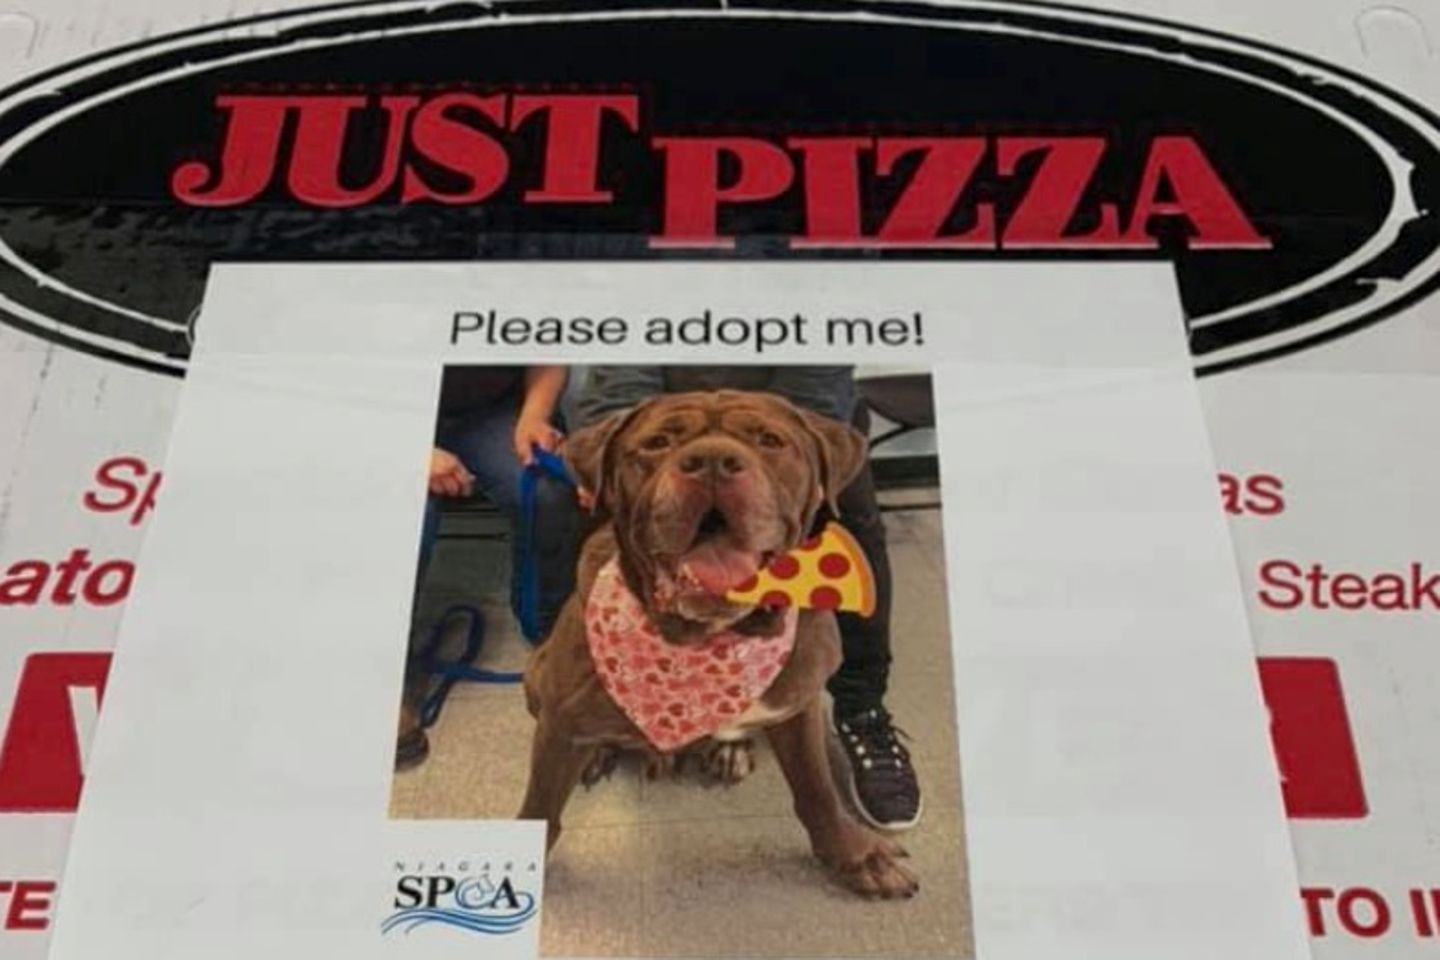 Adoption im Pizzakarton: Für den guten Zweck: Pizzeria liefert Kartons mit Tierbildern